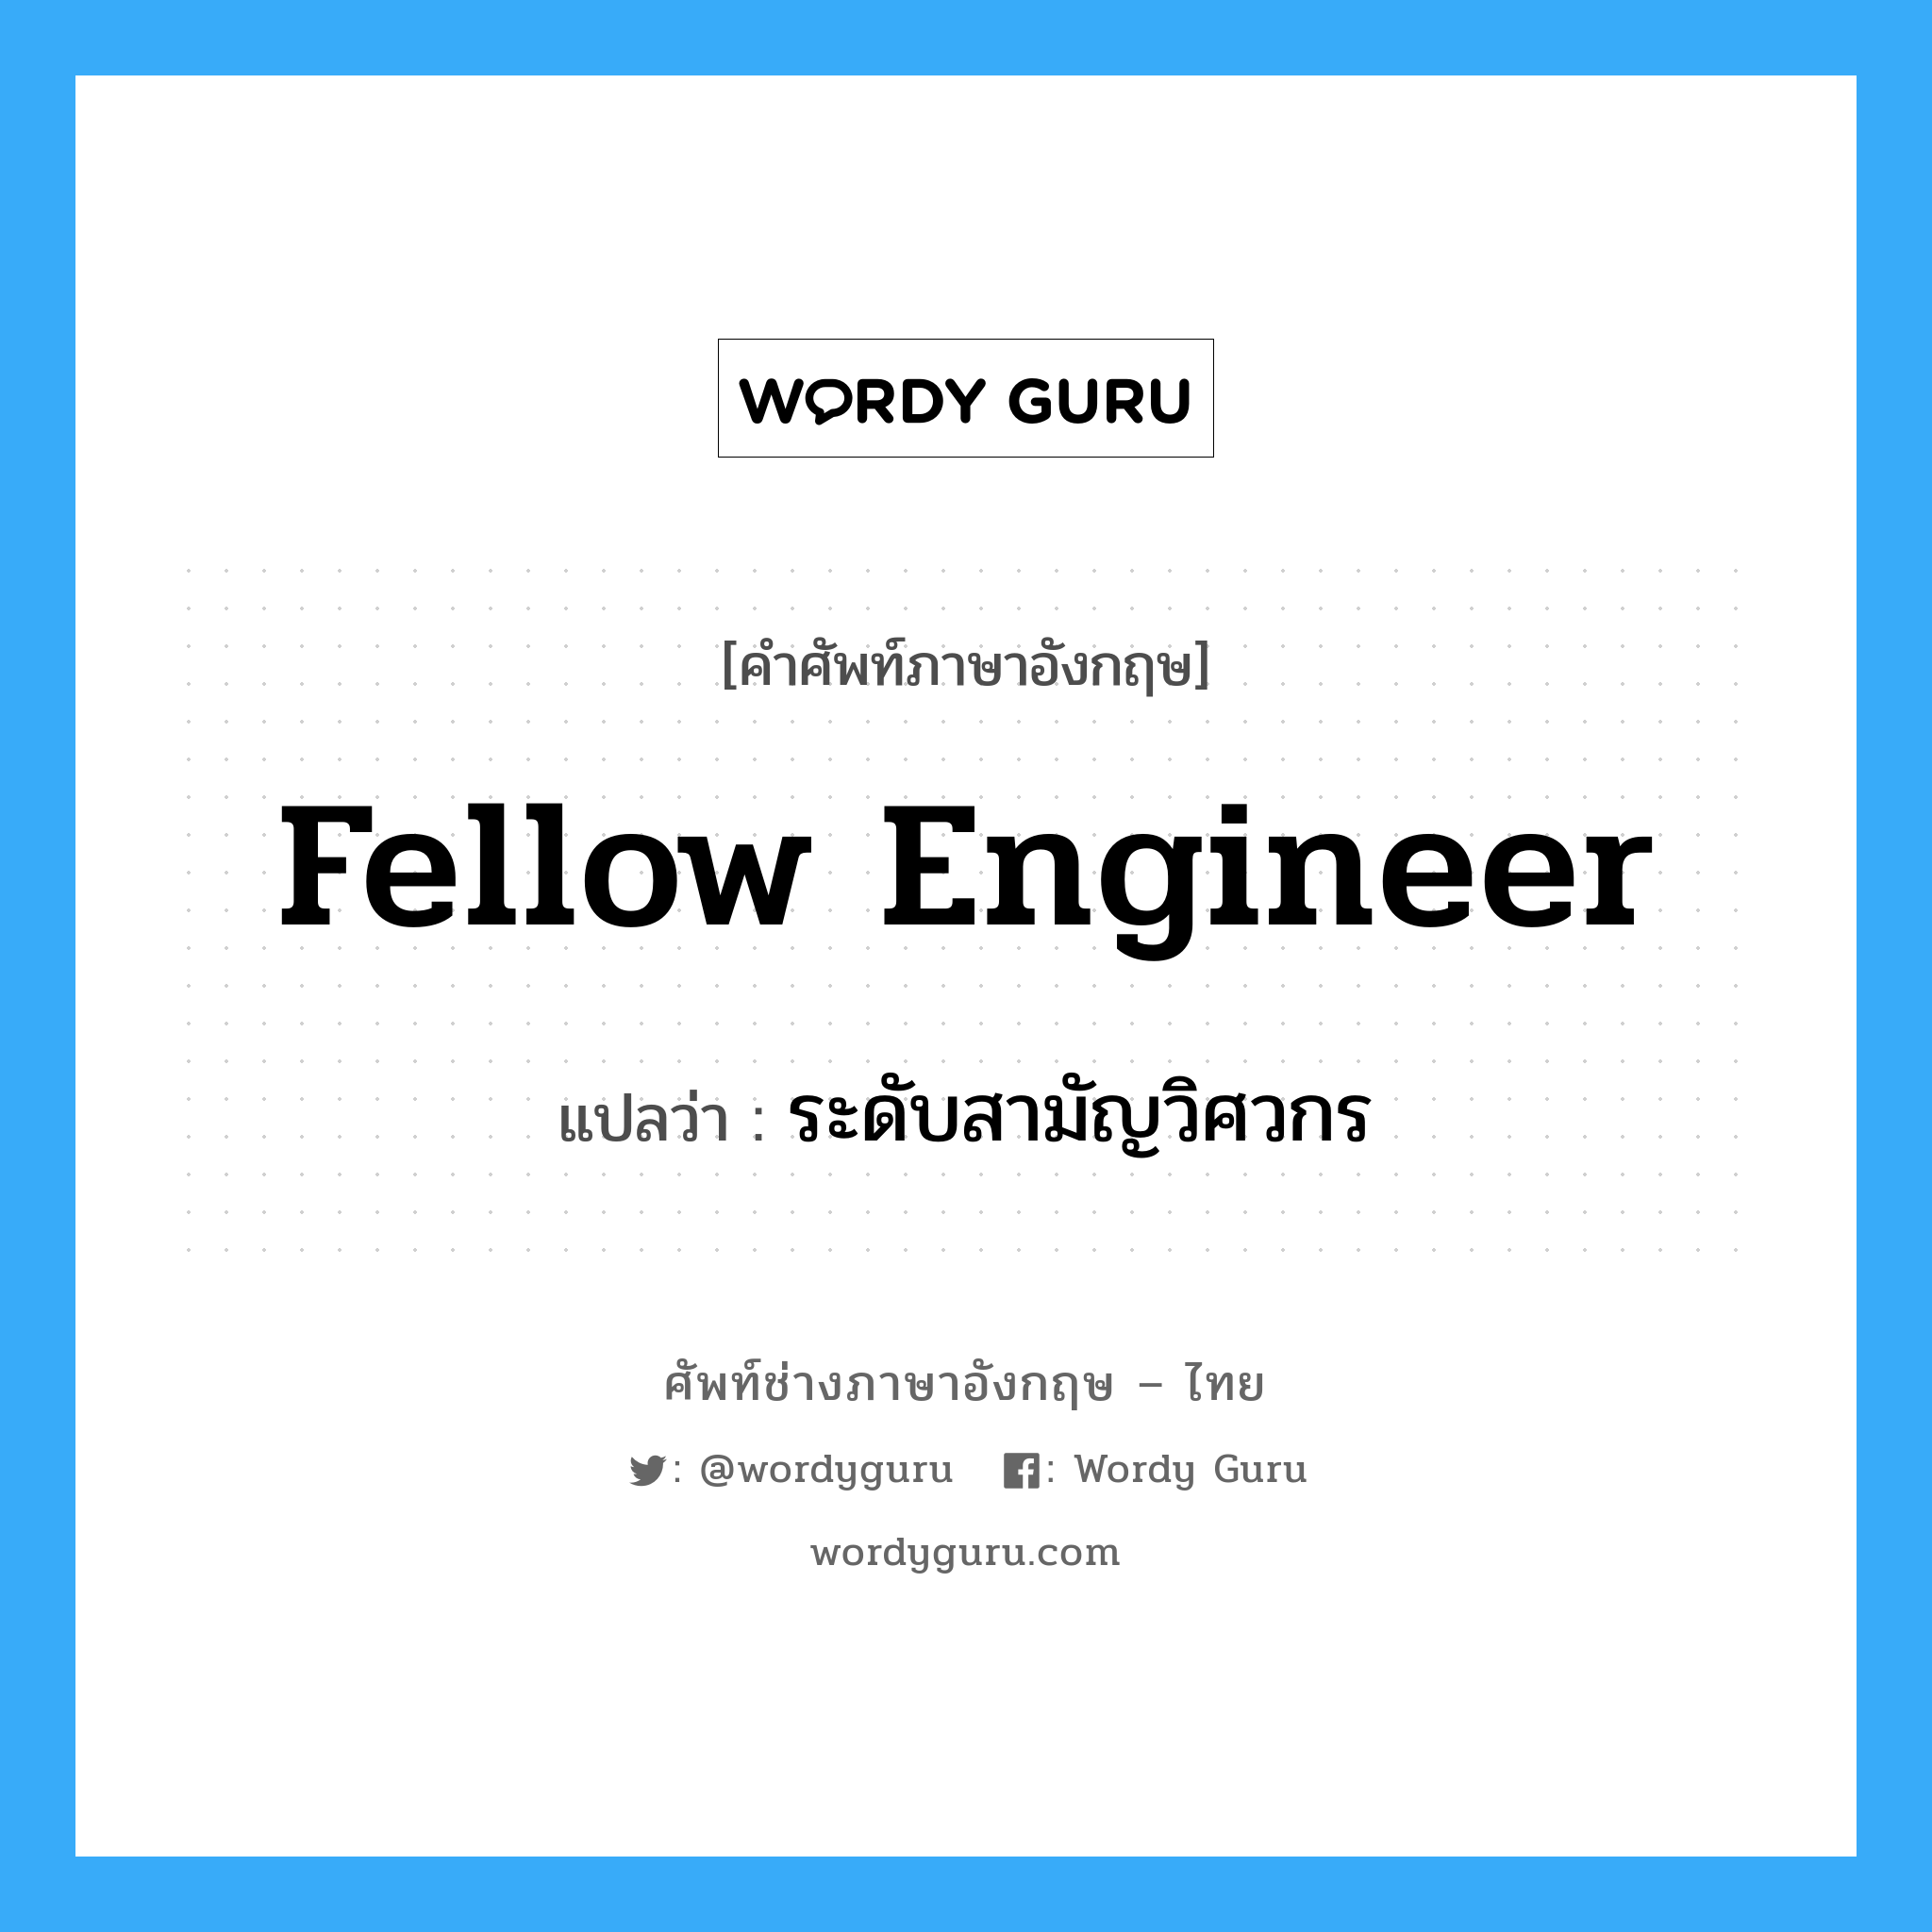 Fellow Engineer แปลว่า?, คำศัพท์ช่างภาษาอังกฤษ - ไทย Fellow Engineer คำศัพท์ภาษาอังกฤษ Fellow Engineer แปลว่า ระดับสามัญวิศวกร